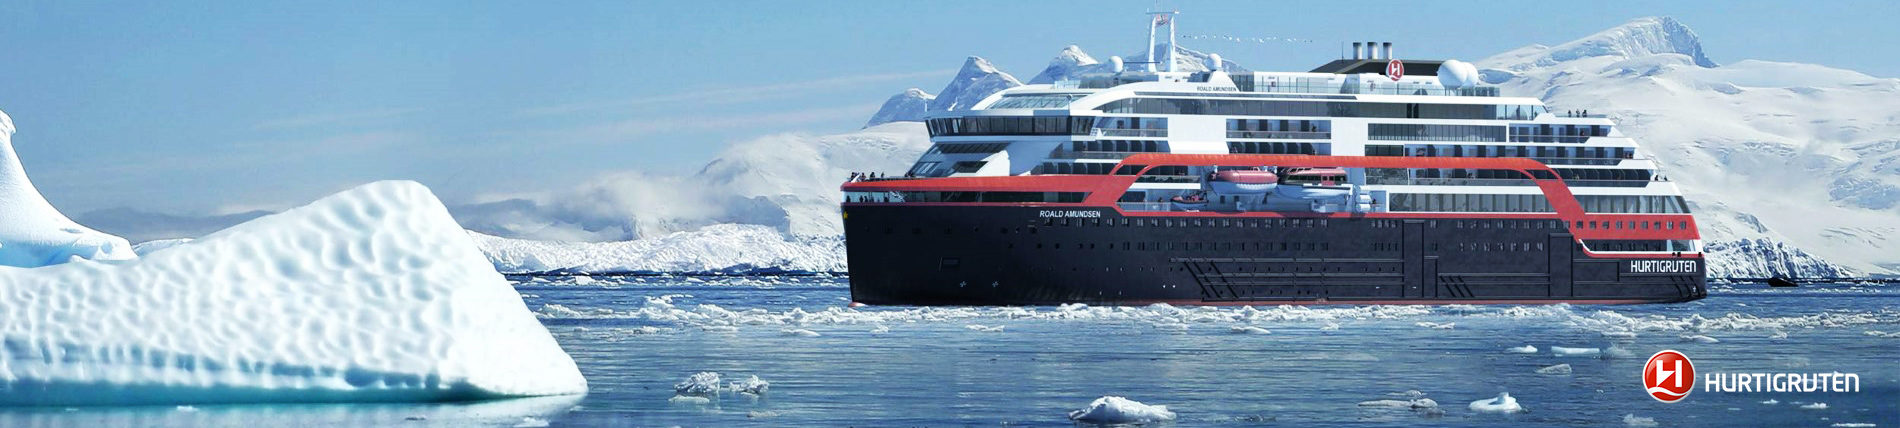 Už o pár týždňov vypláva do Antarktídy prvá výletná loď s hybridným pohonom, krstnou mamou jej bude známa polárna bádateľka